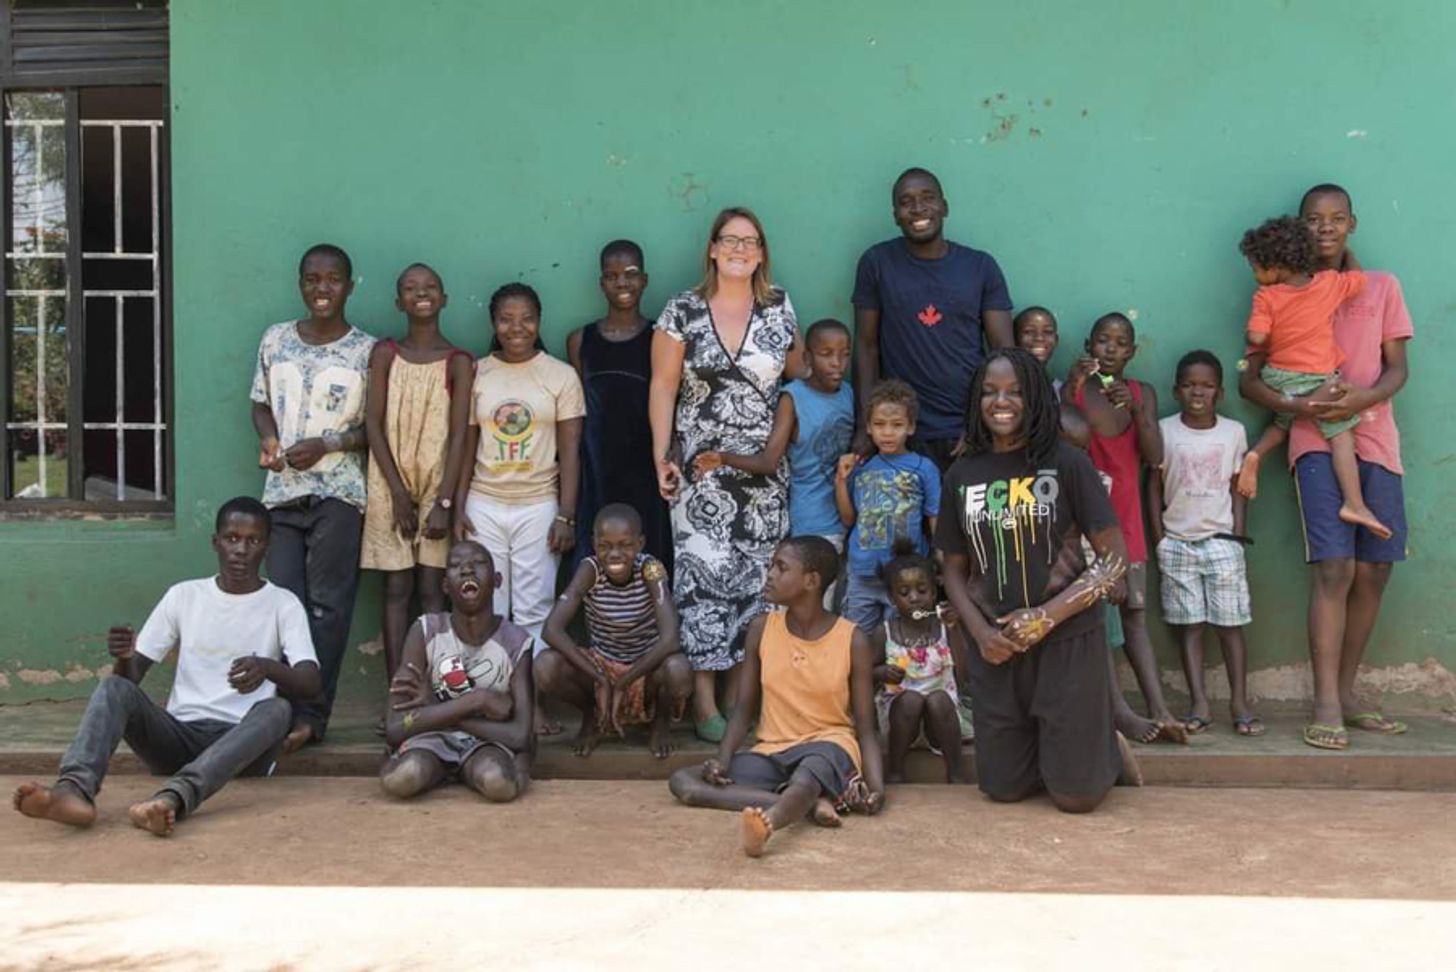 Suzan woont in Oeganda en heeft 16 (pleeg)kinderen